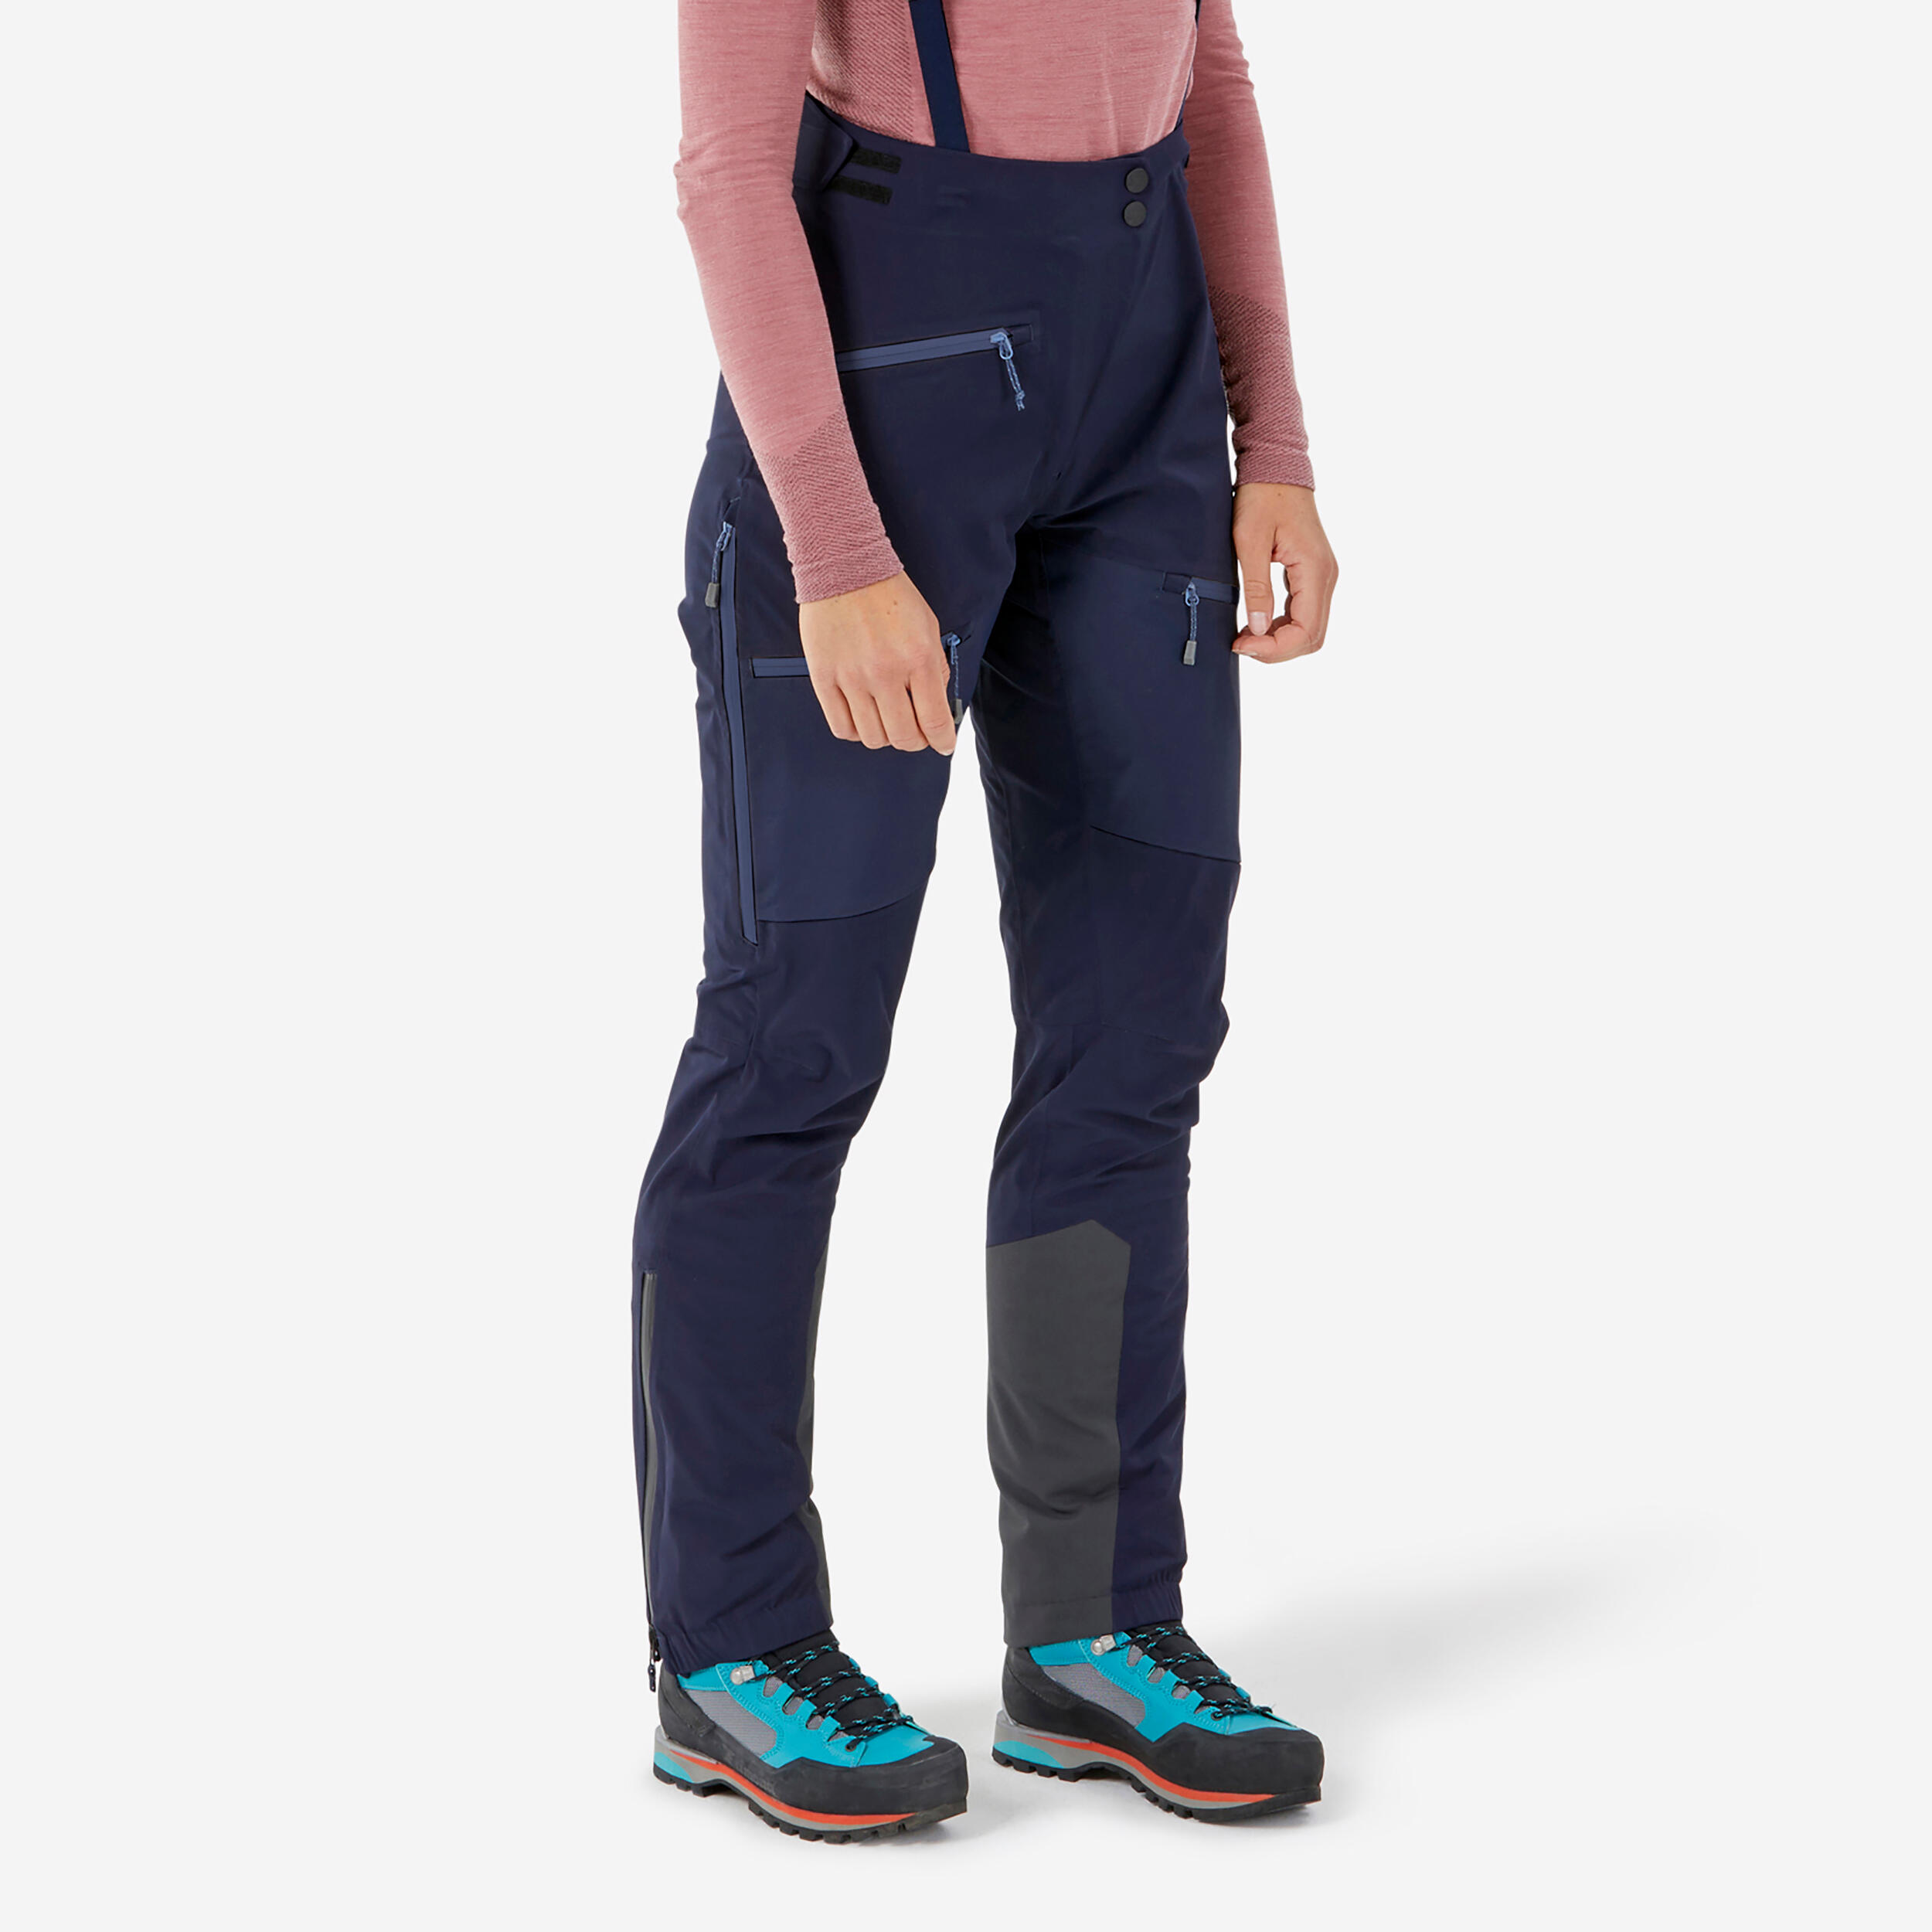 Women's mountaineering waterproof ICE trousers - Blue black 1/9